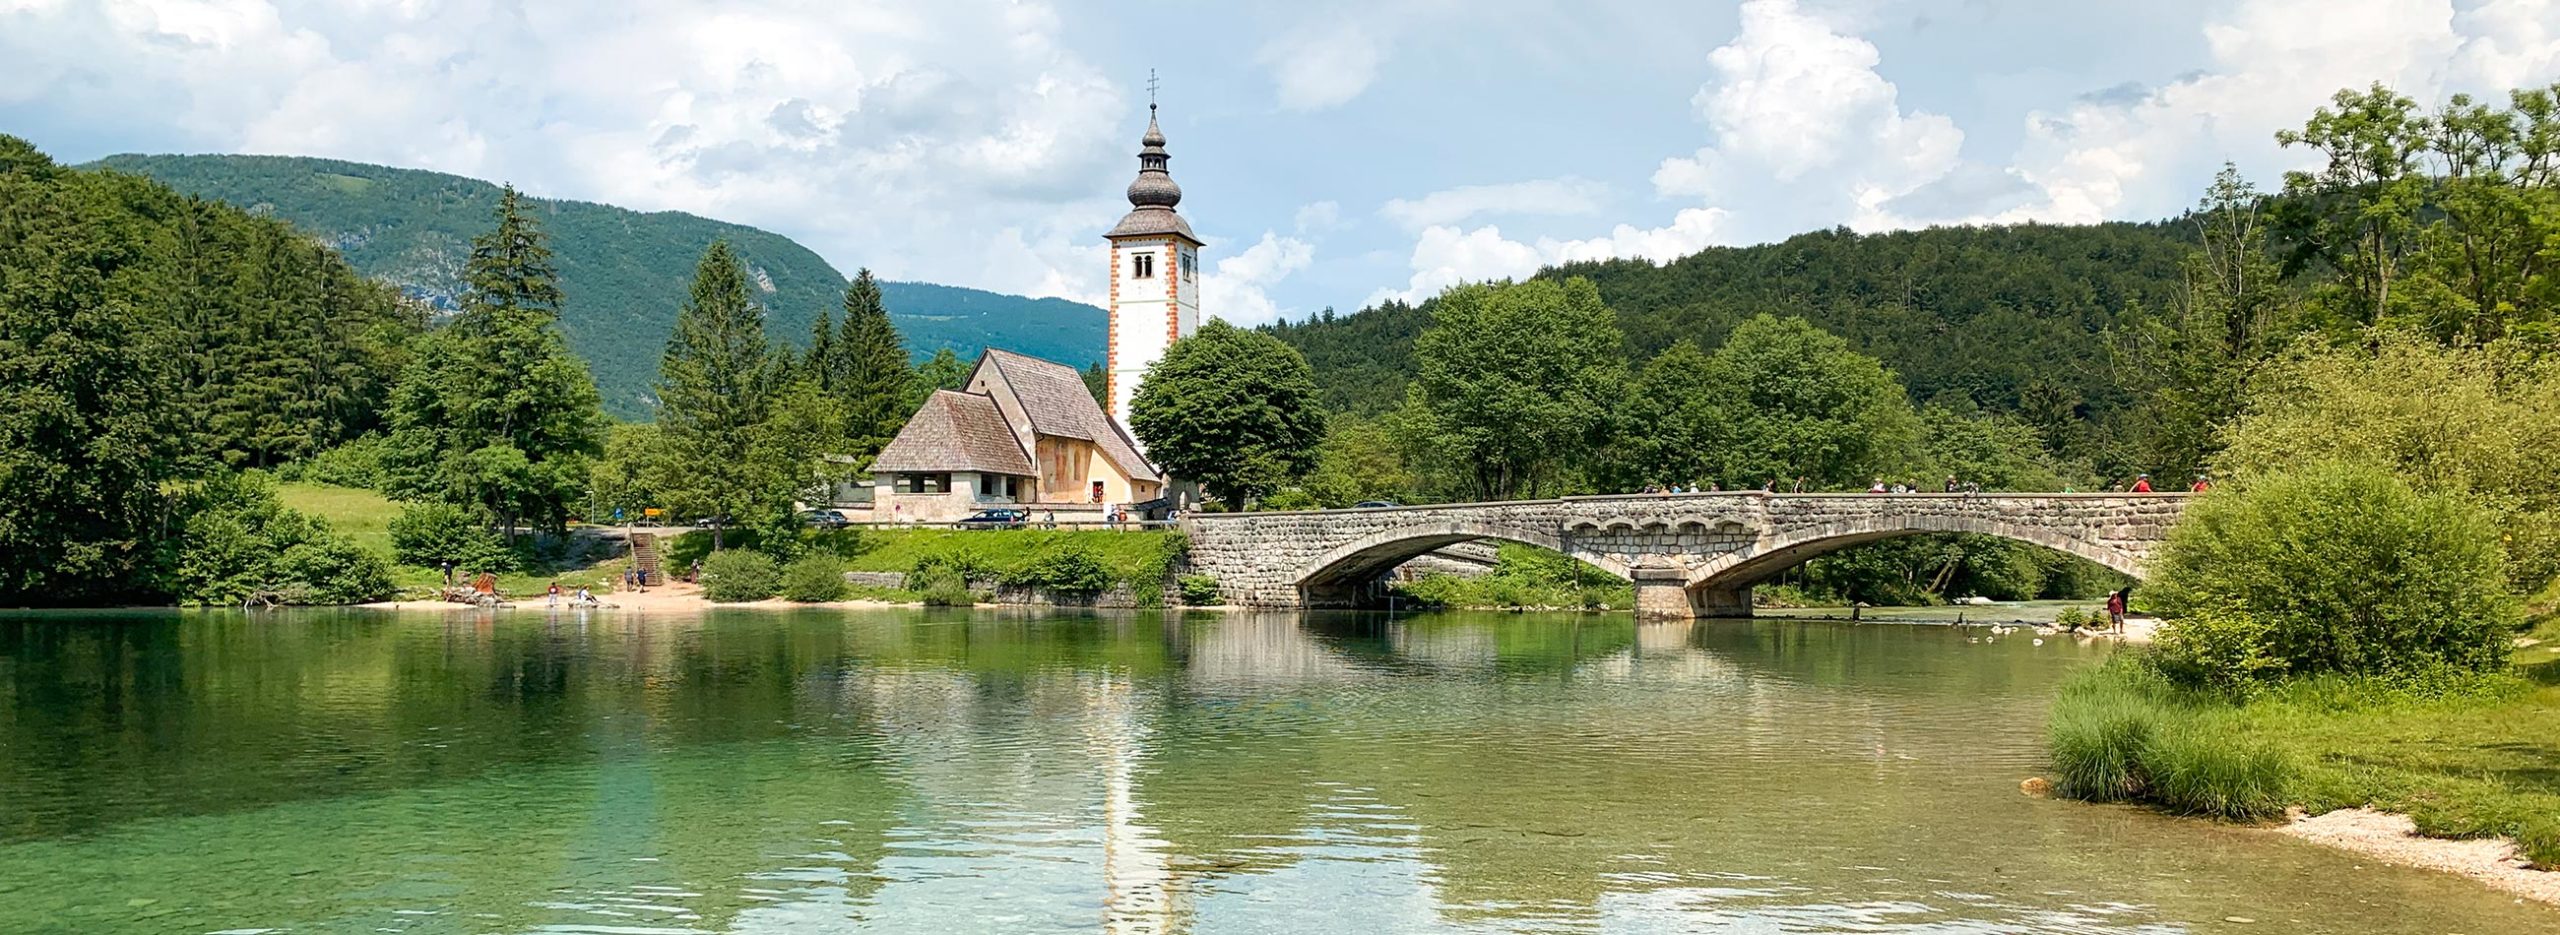 Église, Lac Bohinj, Slovénie / Church, Bohinj Lake, Slovenia